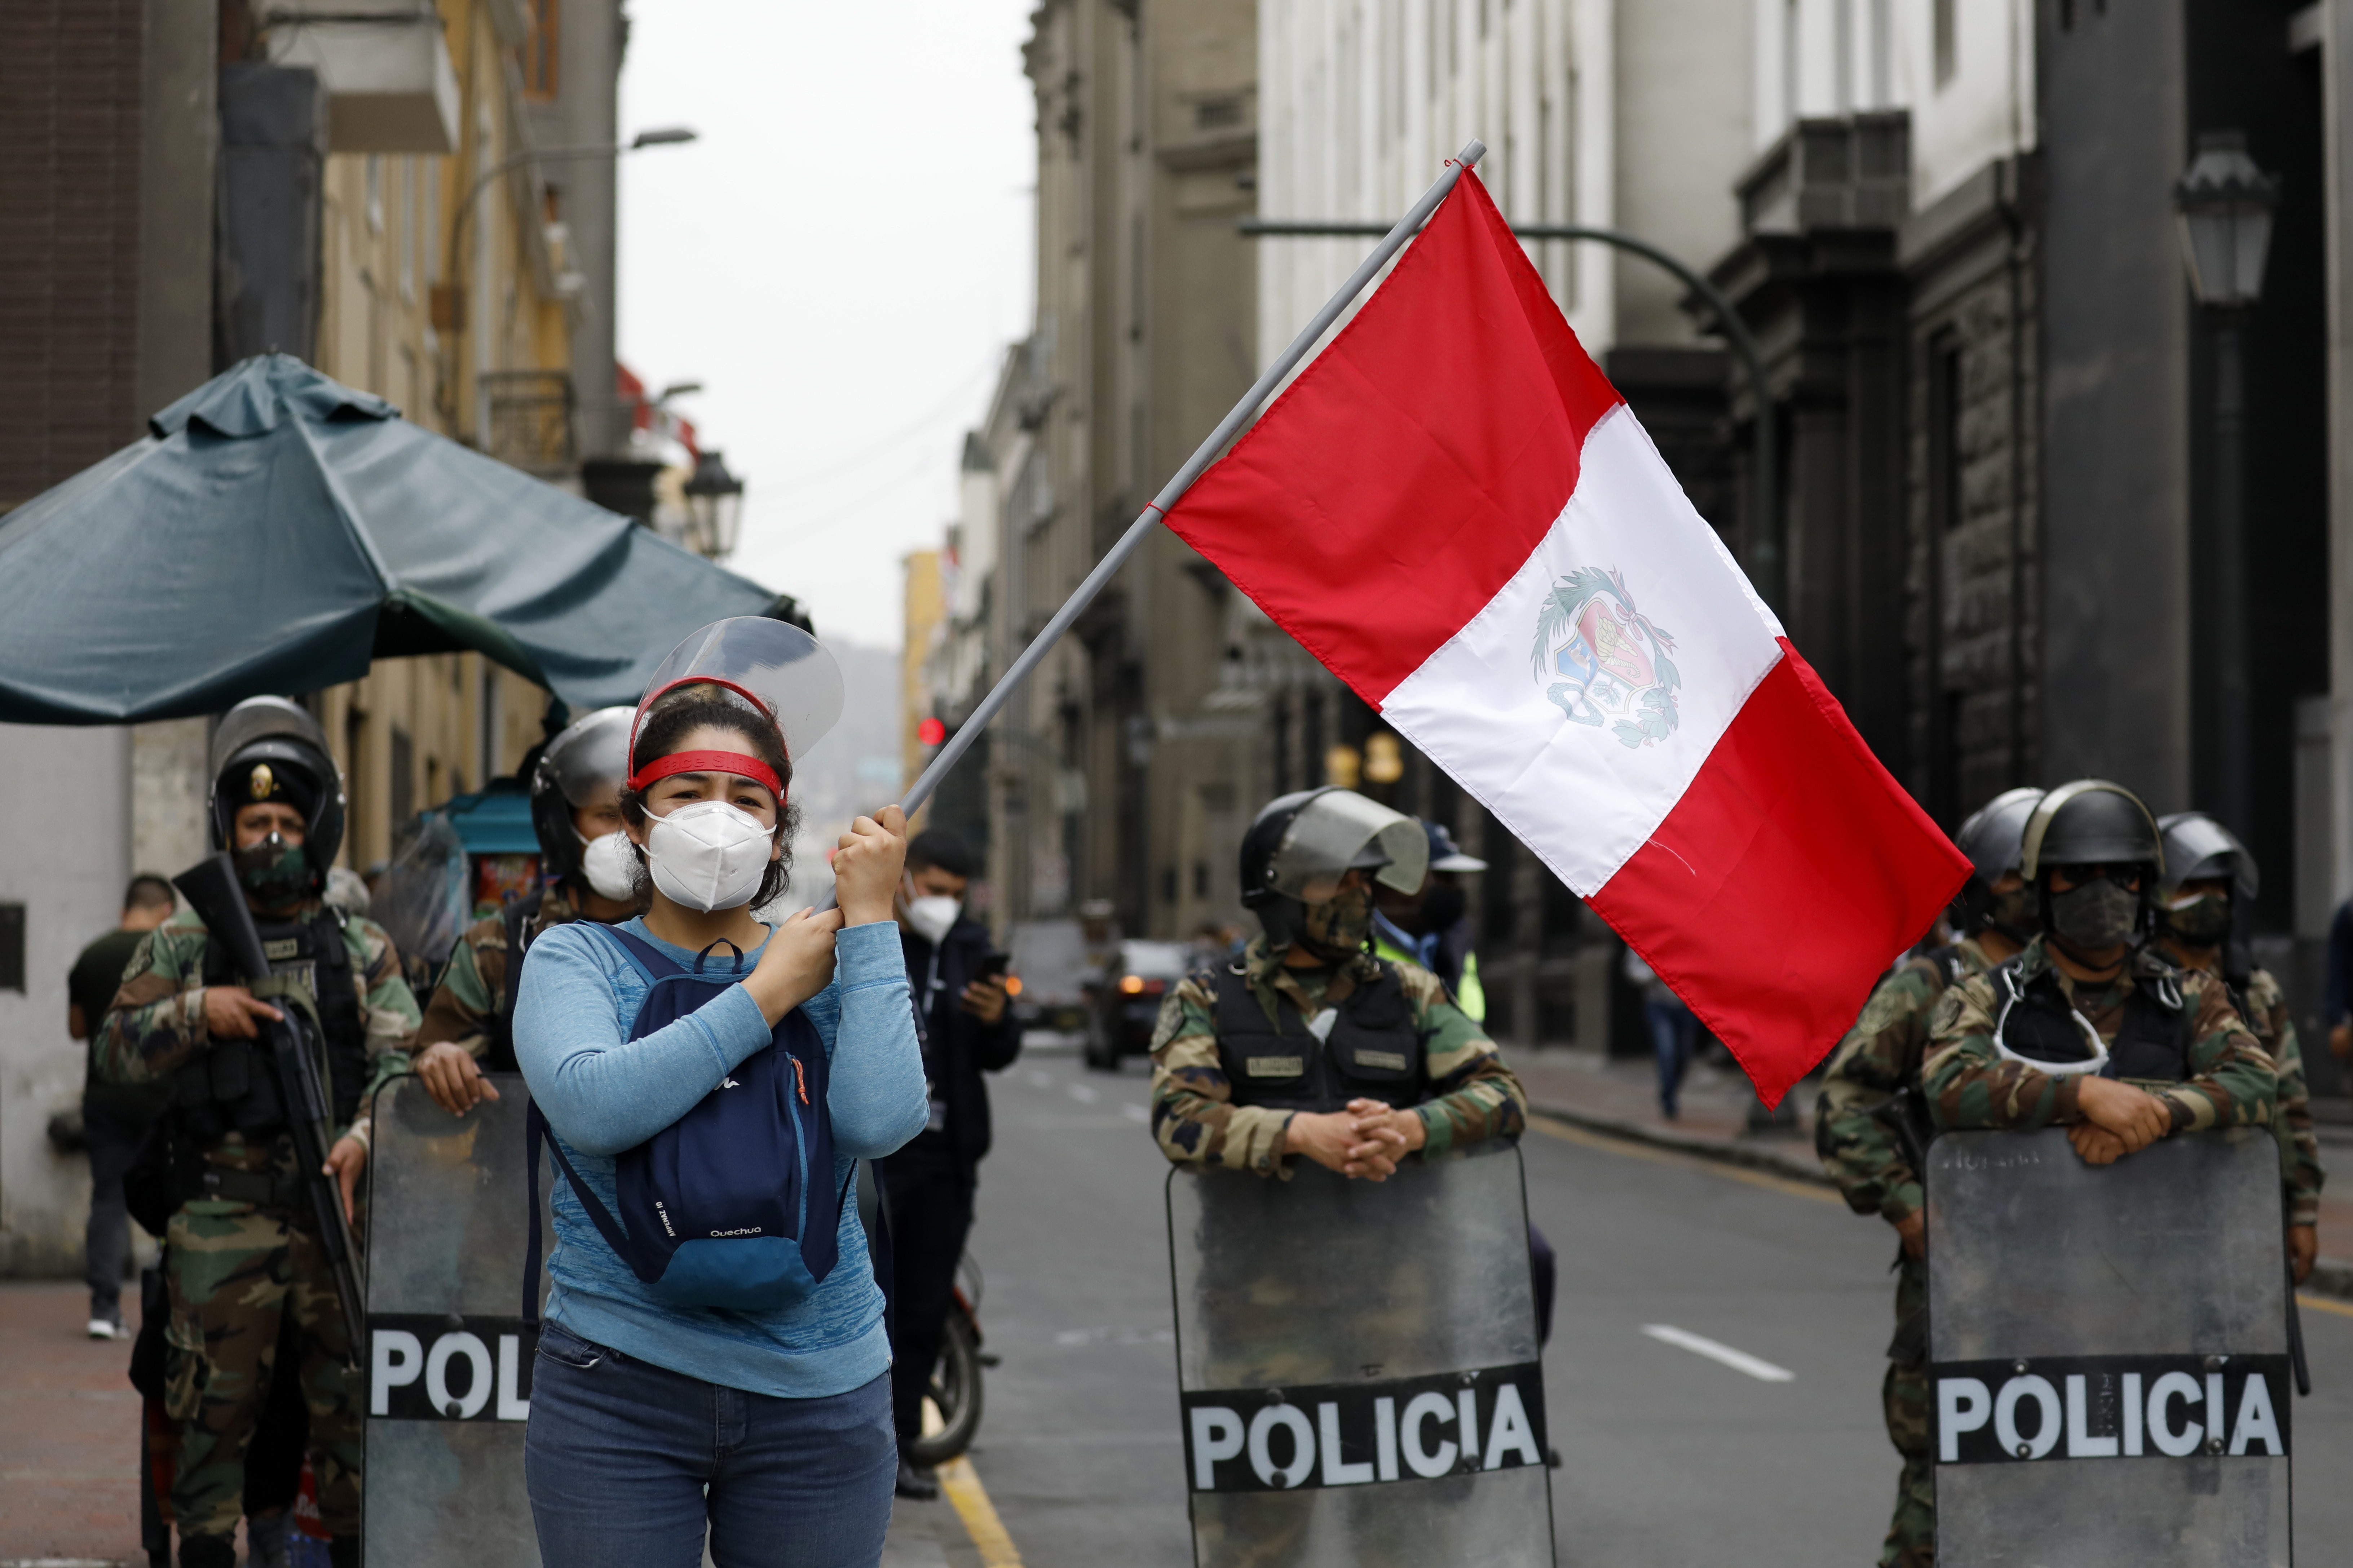 La convulsión política se ha vuelto habitual en las calles de Lima en los últimos años (Europa Press)
